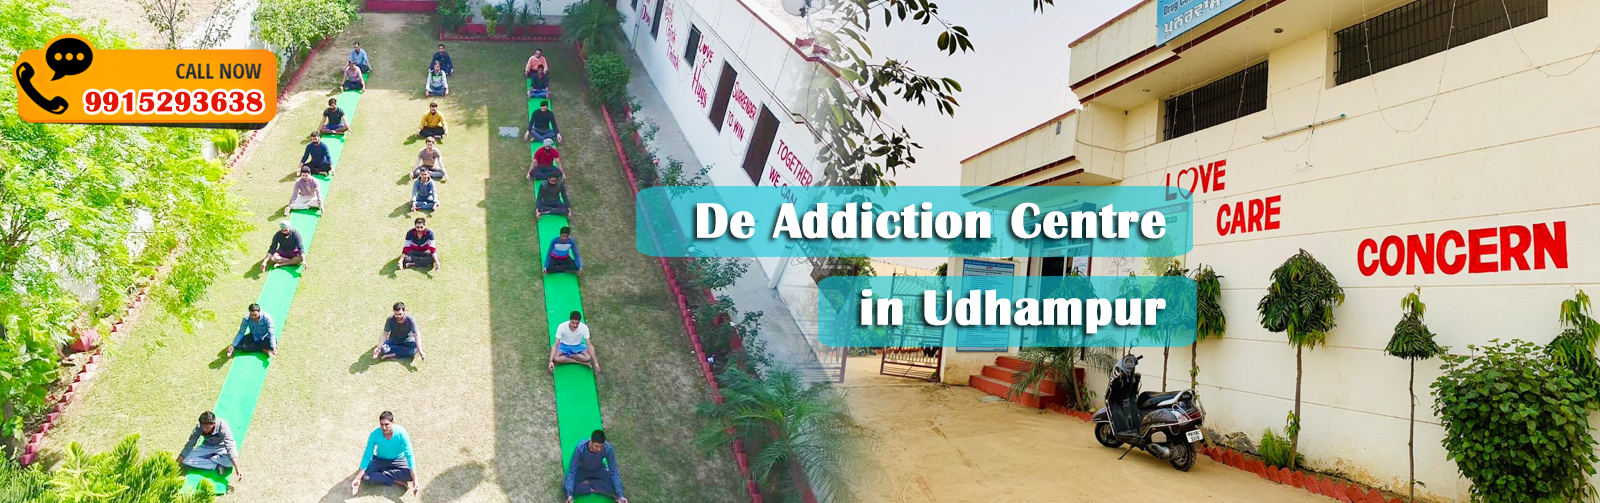 De Addiction Centre in Udhampur